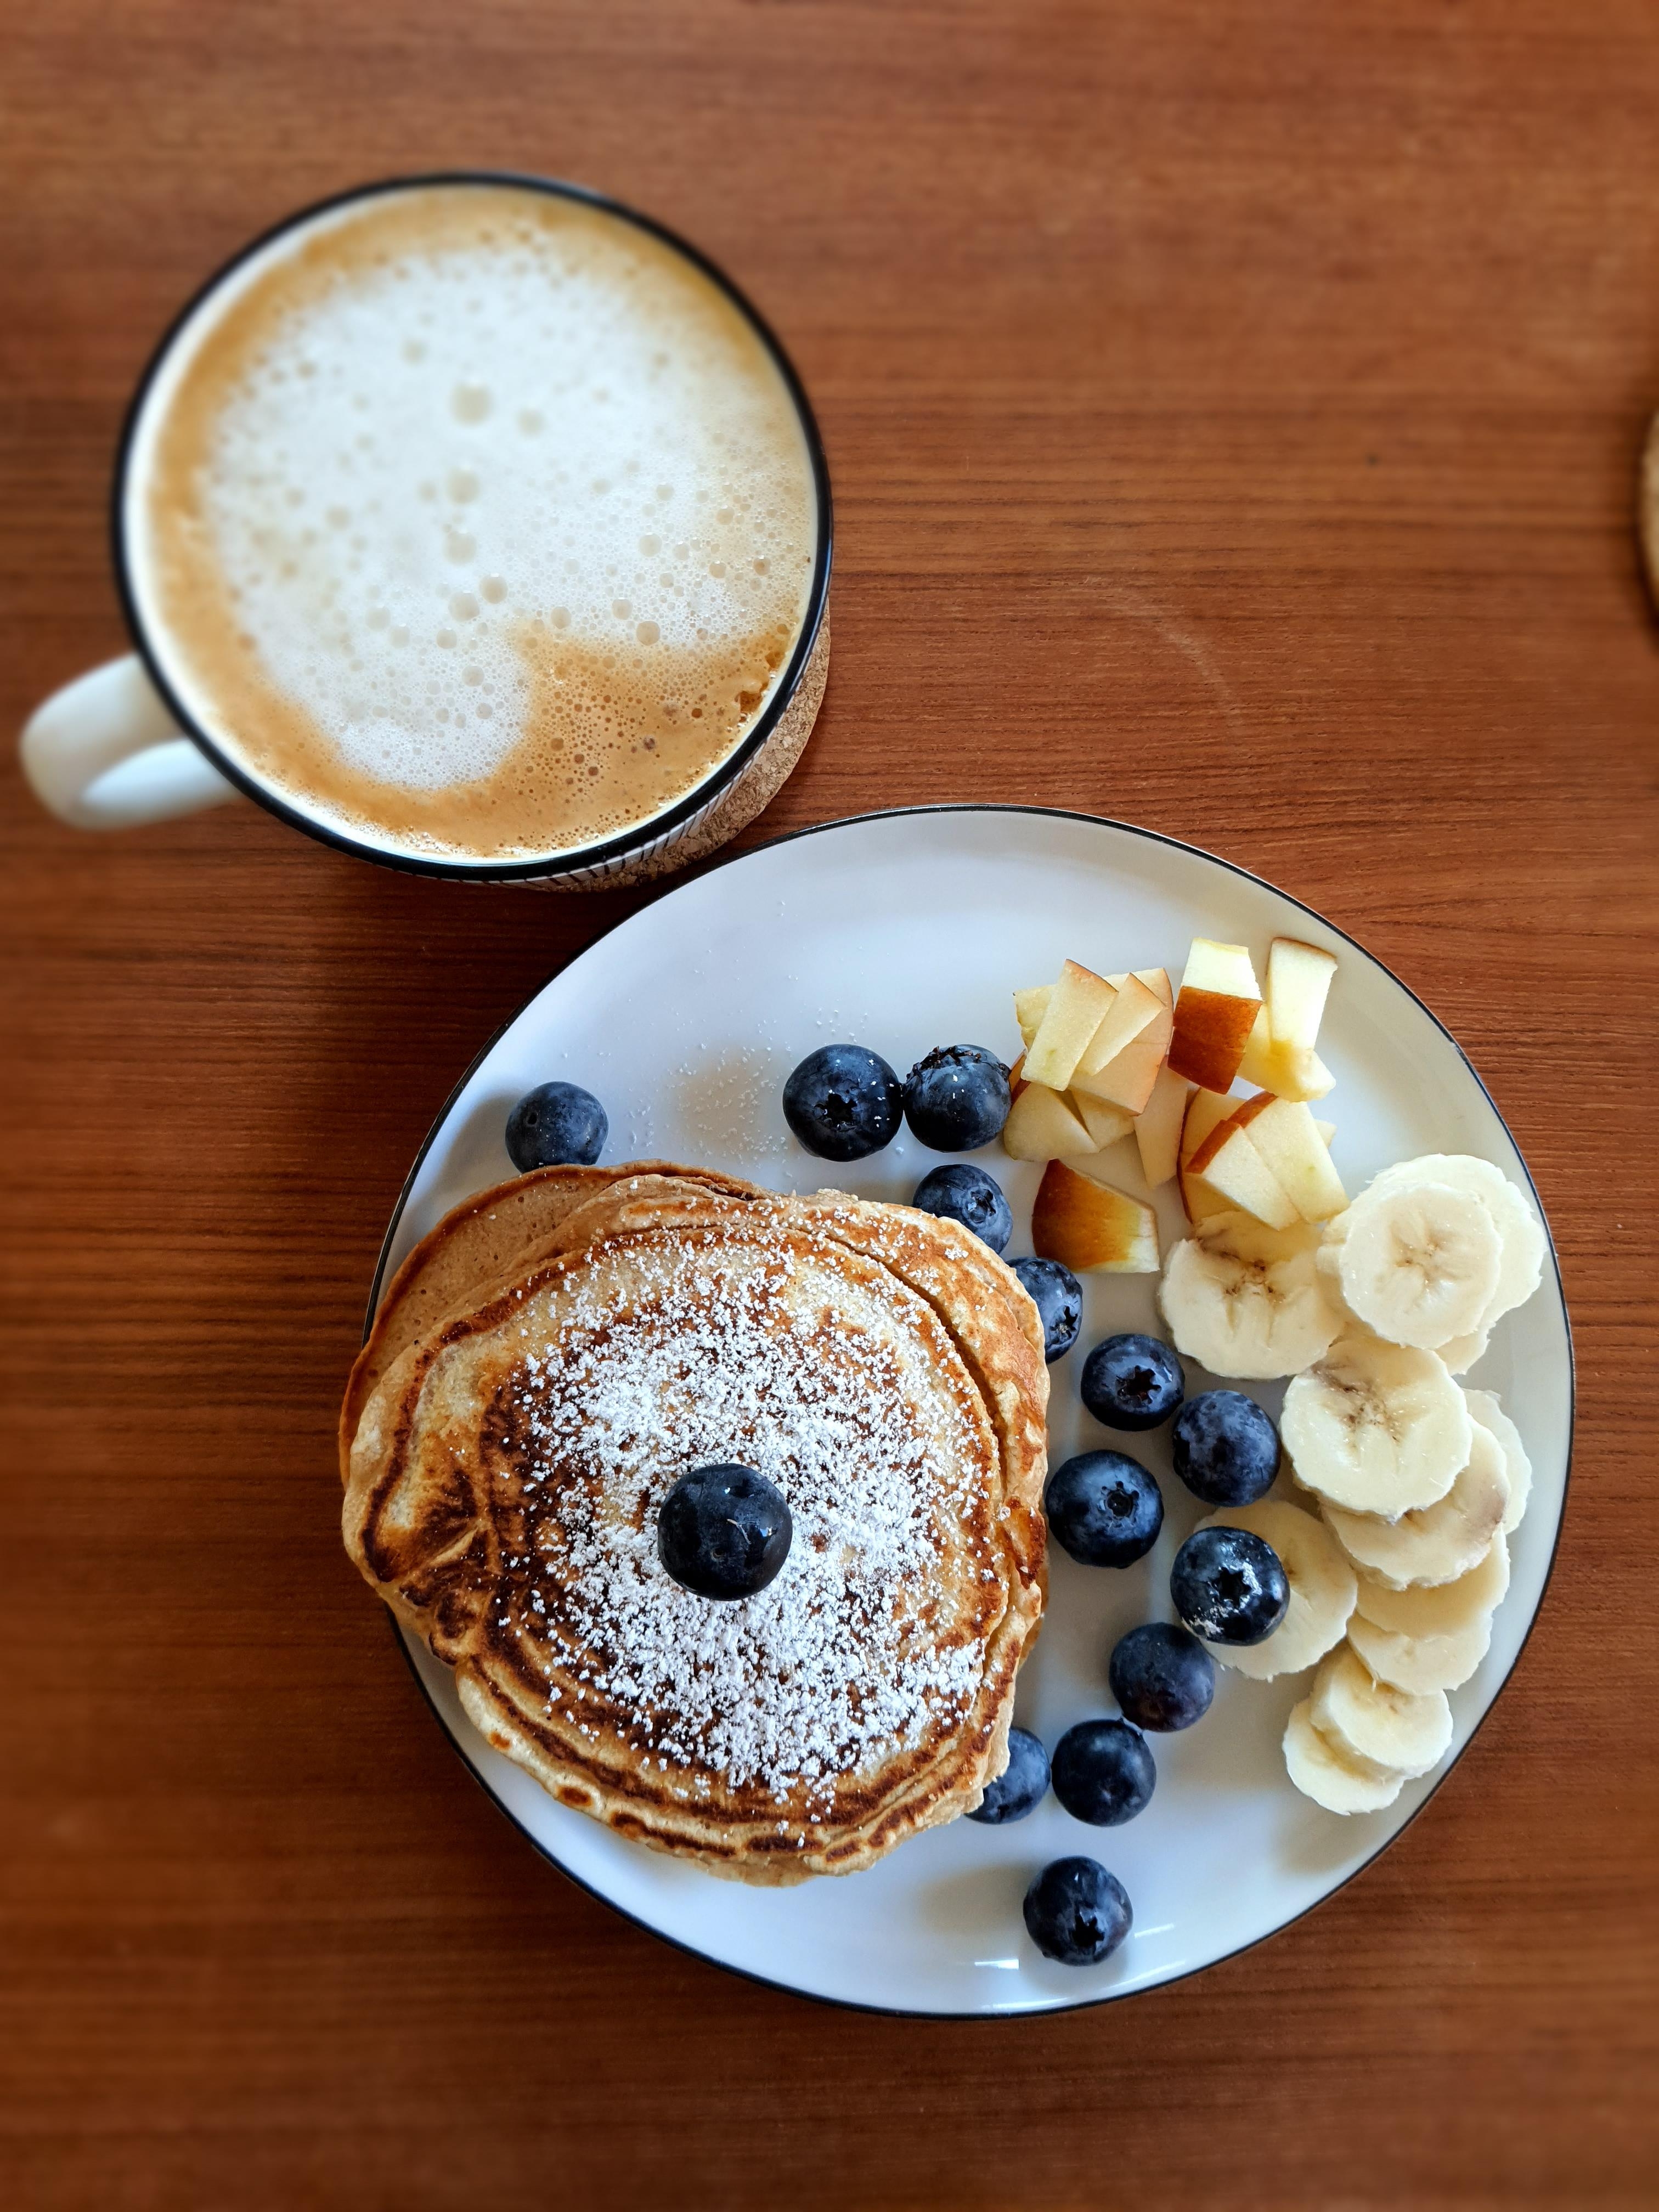 Guten Morgen Sonnenschein #frühstück #pancakes #sunday #startyourdayright